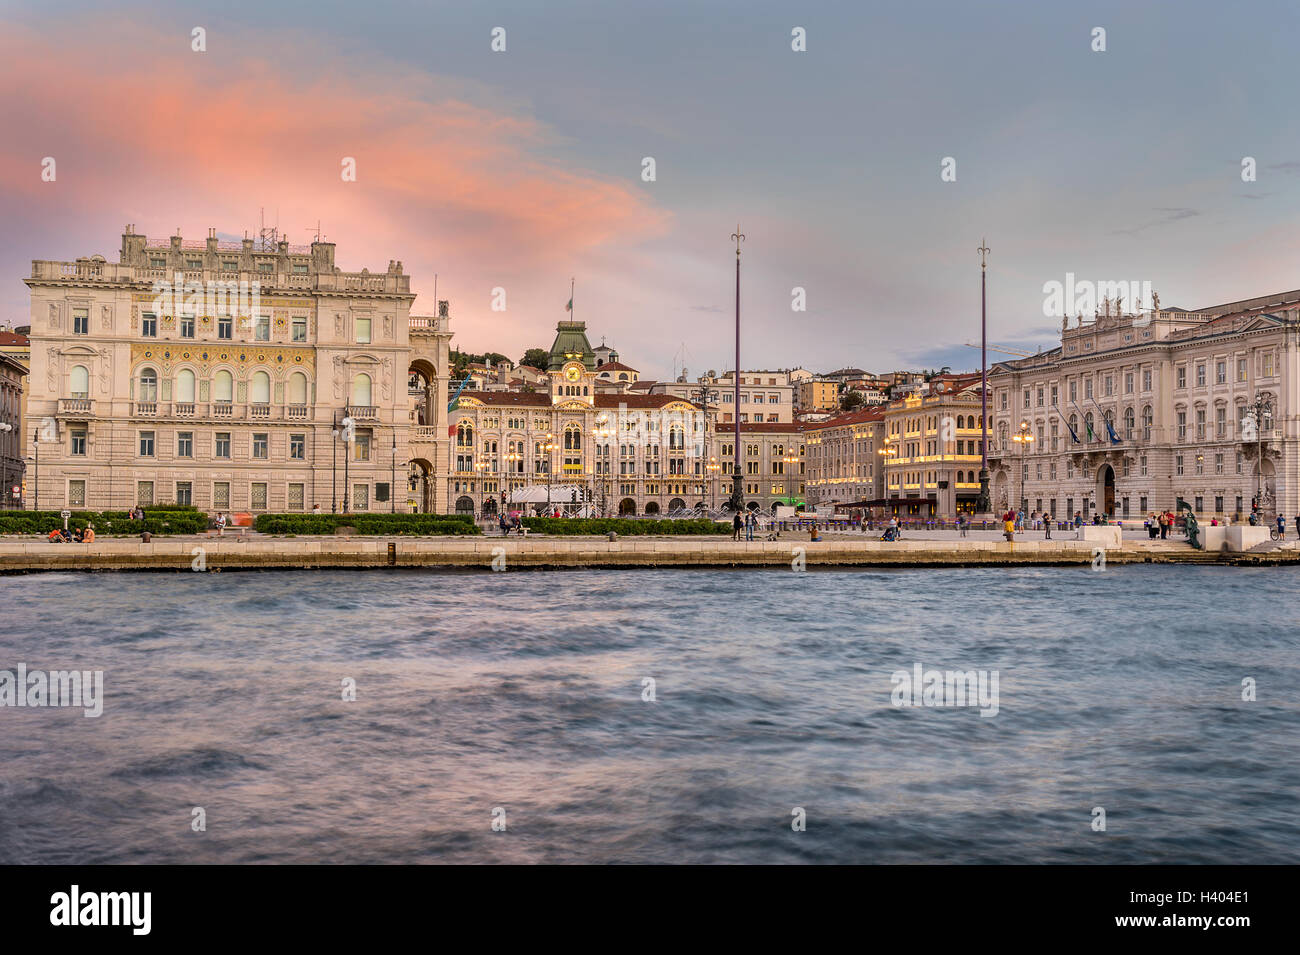 The Piazza Dell Unita D'Italia in Trieste Stock Photo